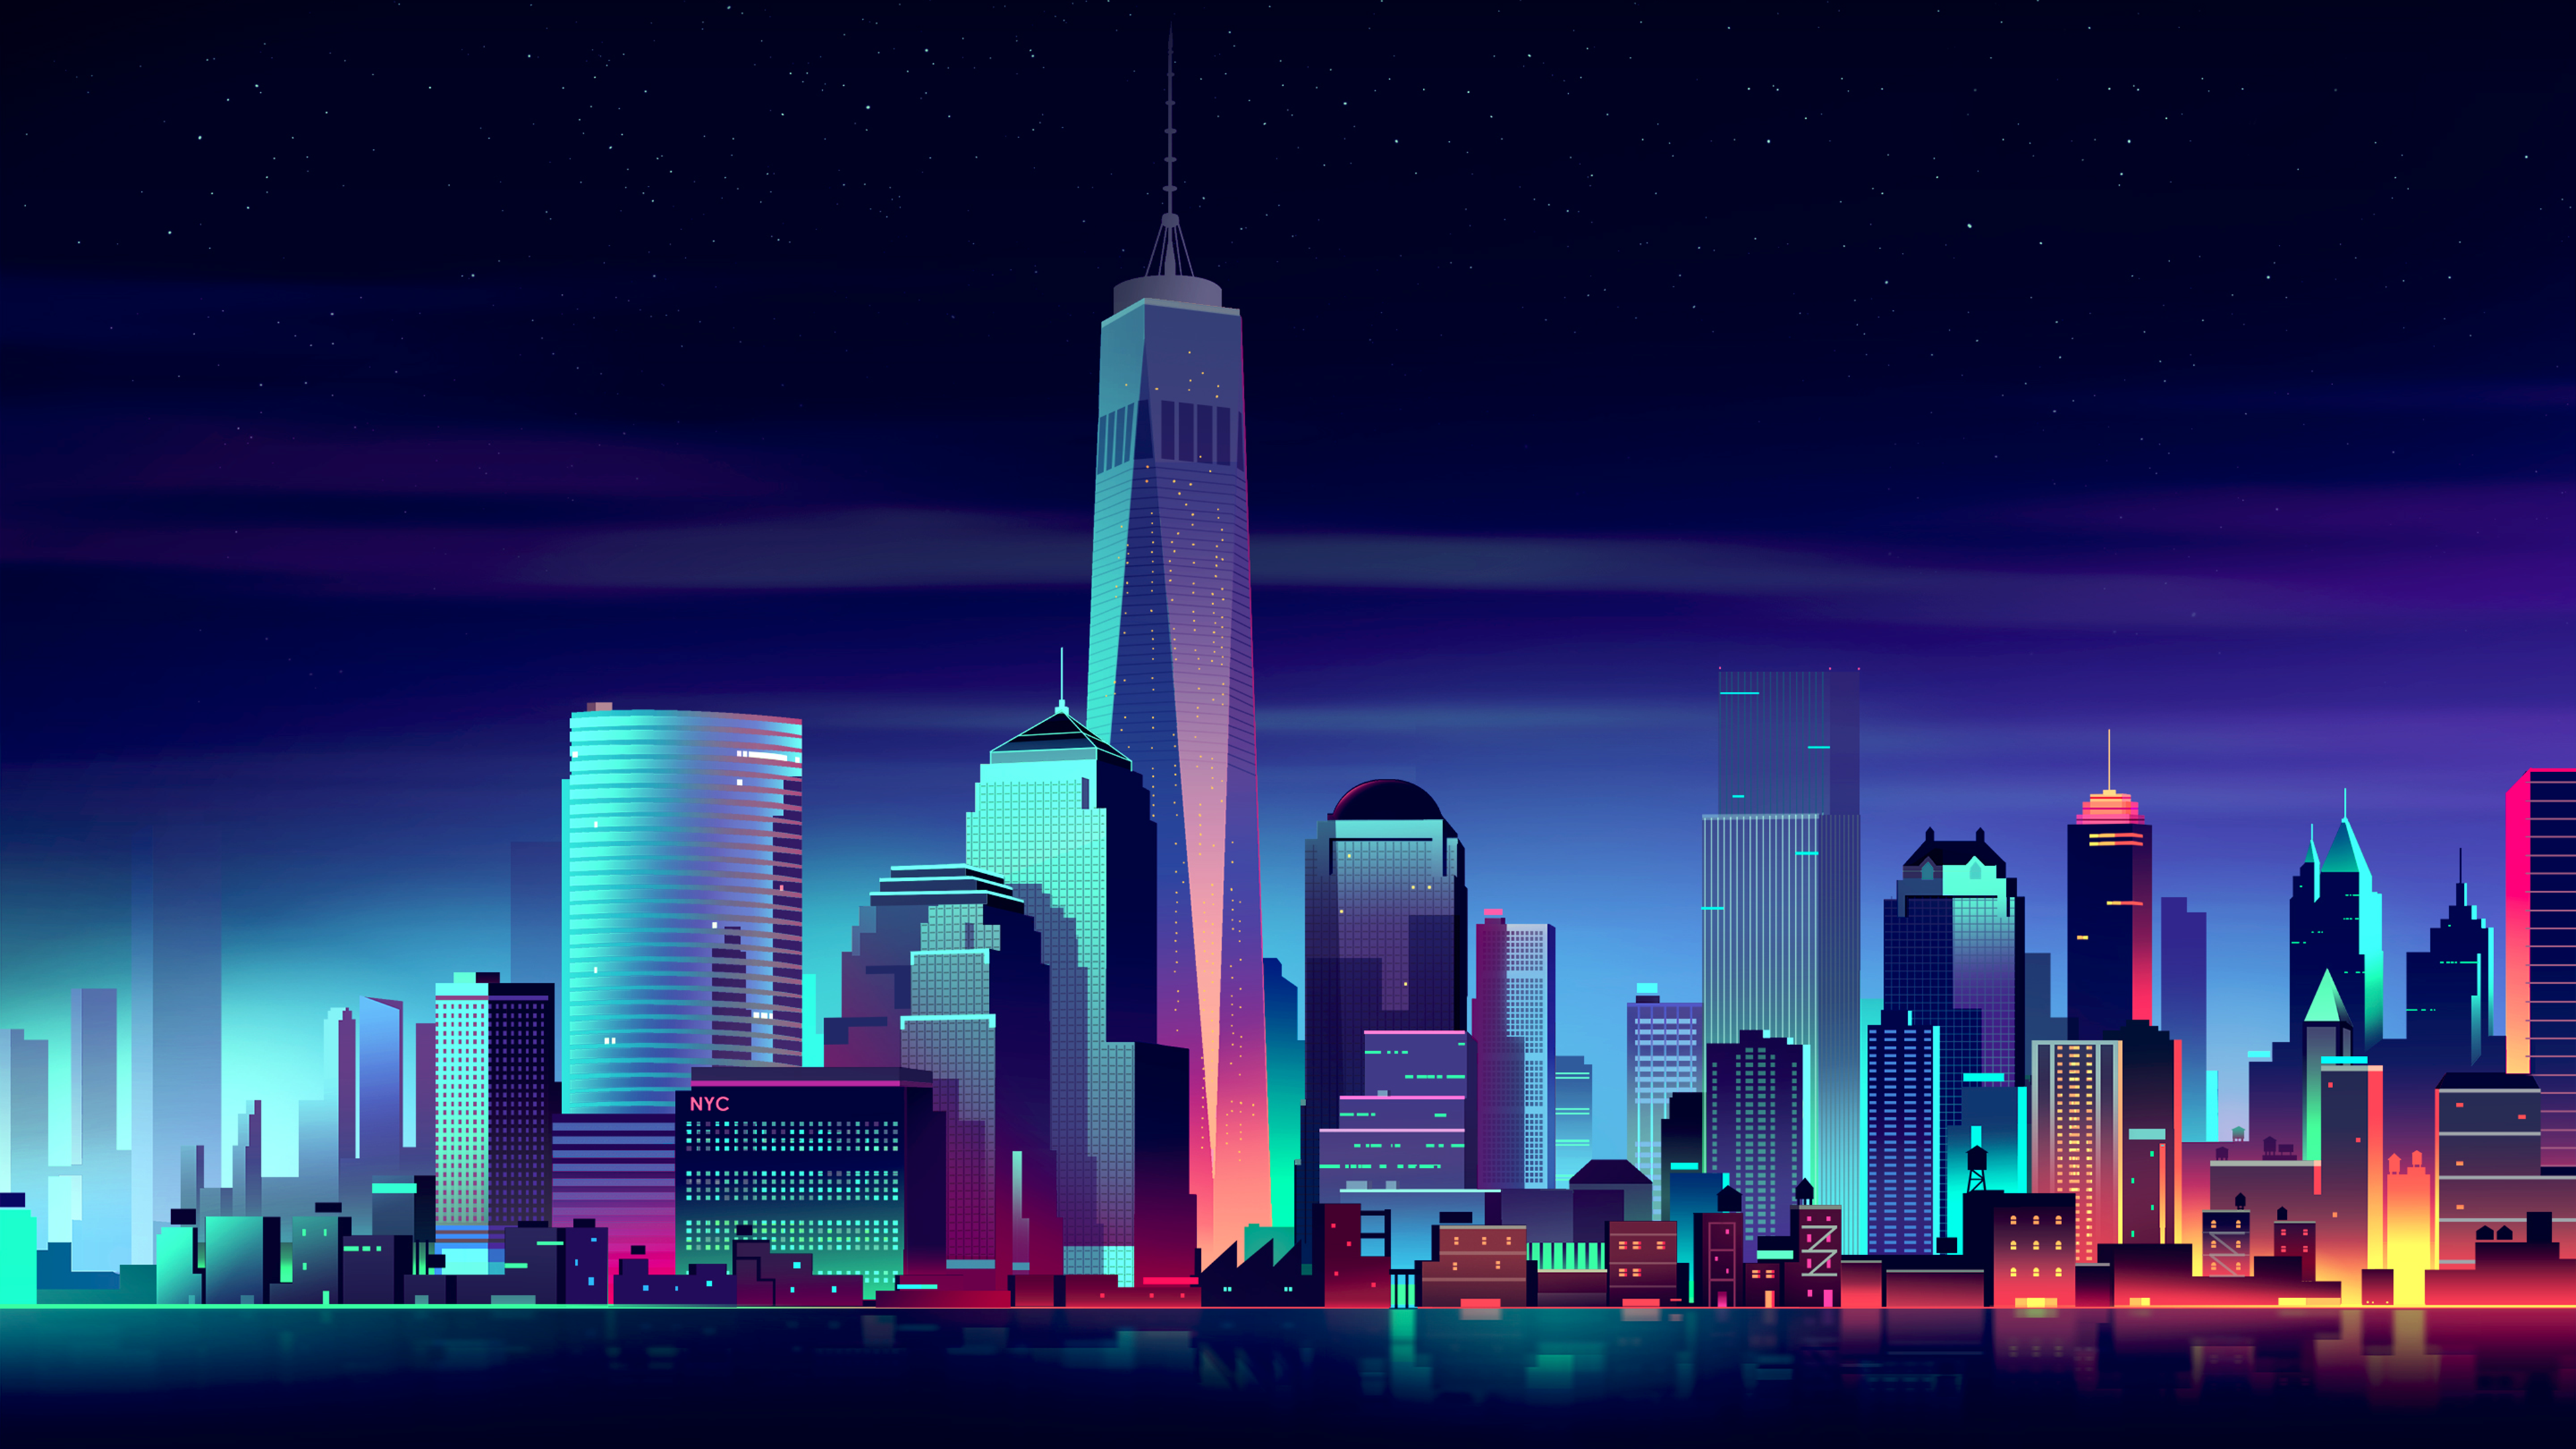 Một thành phố năng động với những ánh đèn neon rực rỡ hấp dẫn bạn ngay từ cái nhìn đầu tiên. Hình nền 4K Neon City Computer Wallpapers giúp cho bạn cảm thấy như đang bước vào một thế giới khác, đầy màu sắc, sôi động và đầy phấn khích. Khám phá những góc khuất đẹp nhất của thành phố này và đắm chìm trong không khí sống động.